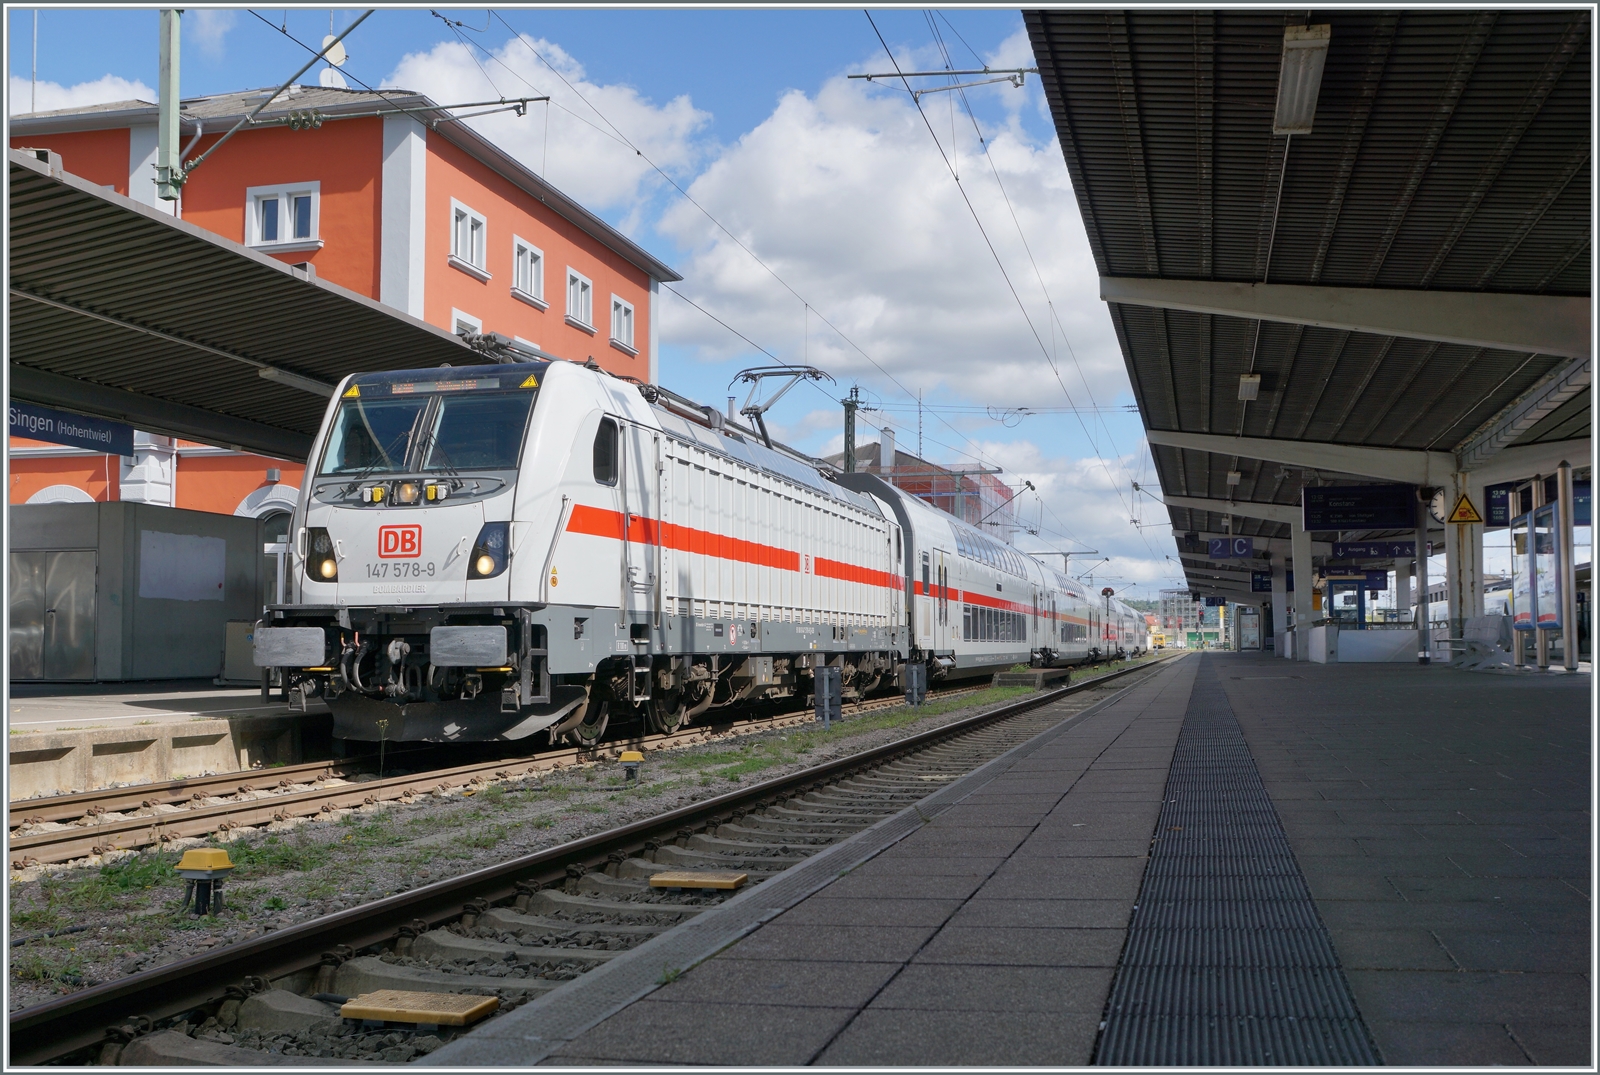 Die DB 147 578-9 ist mit ihrem IC als Leermaterialzug von Radolfzell in Sngen angekommen, von wo aus der Zug als IC nach Stuttgart fahren wird. 

19. Sept. 2022